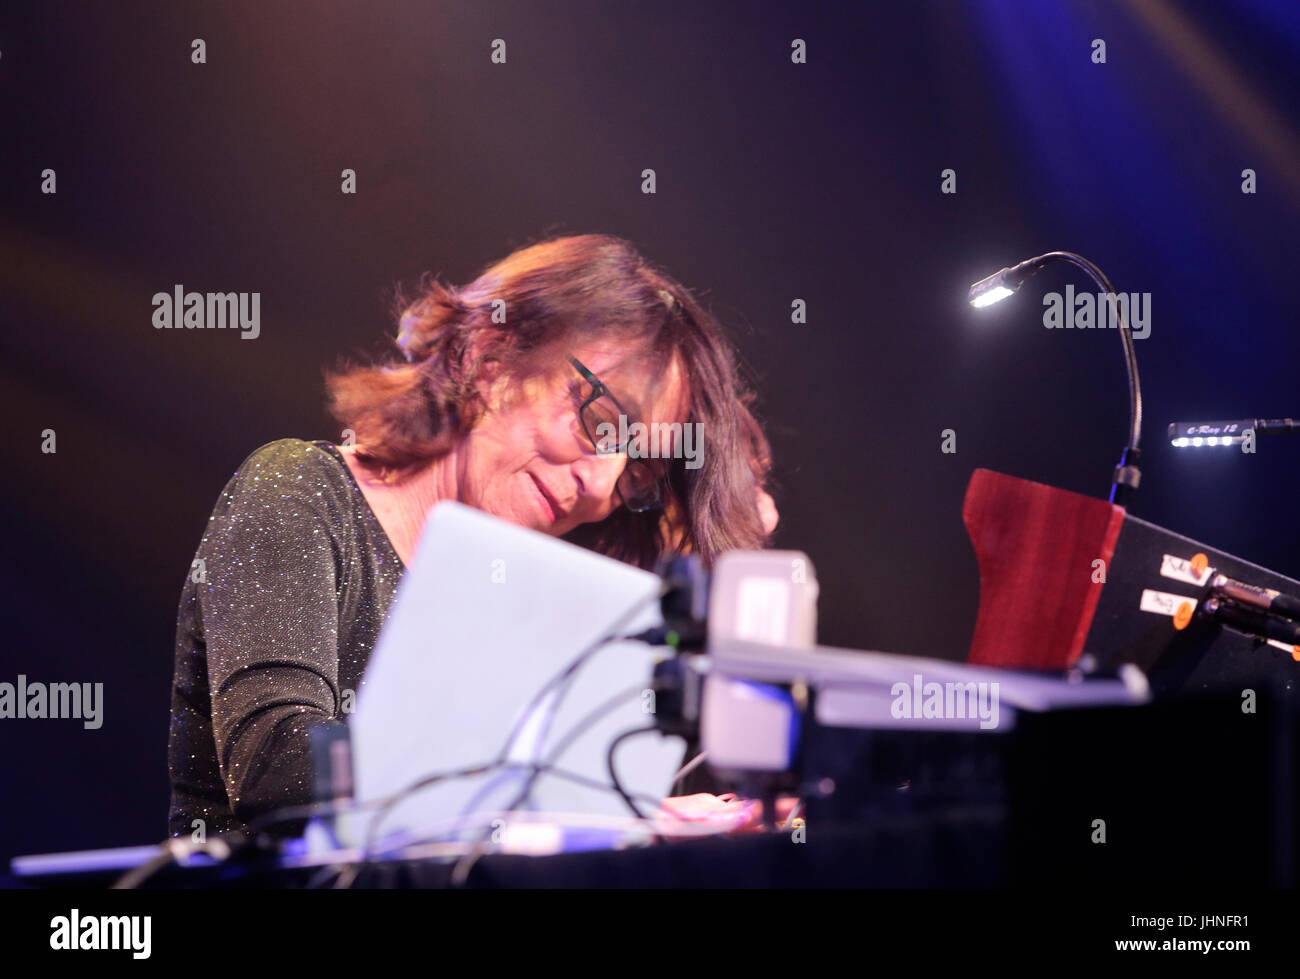 Pianista y compositor italo americana Suzanne Ciani en Sónar Barcelona. Foto de stock